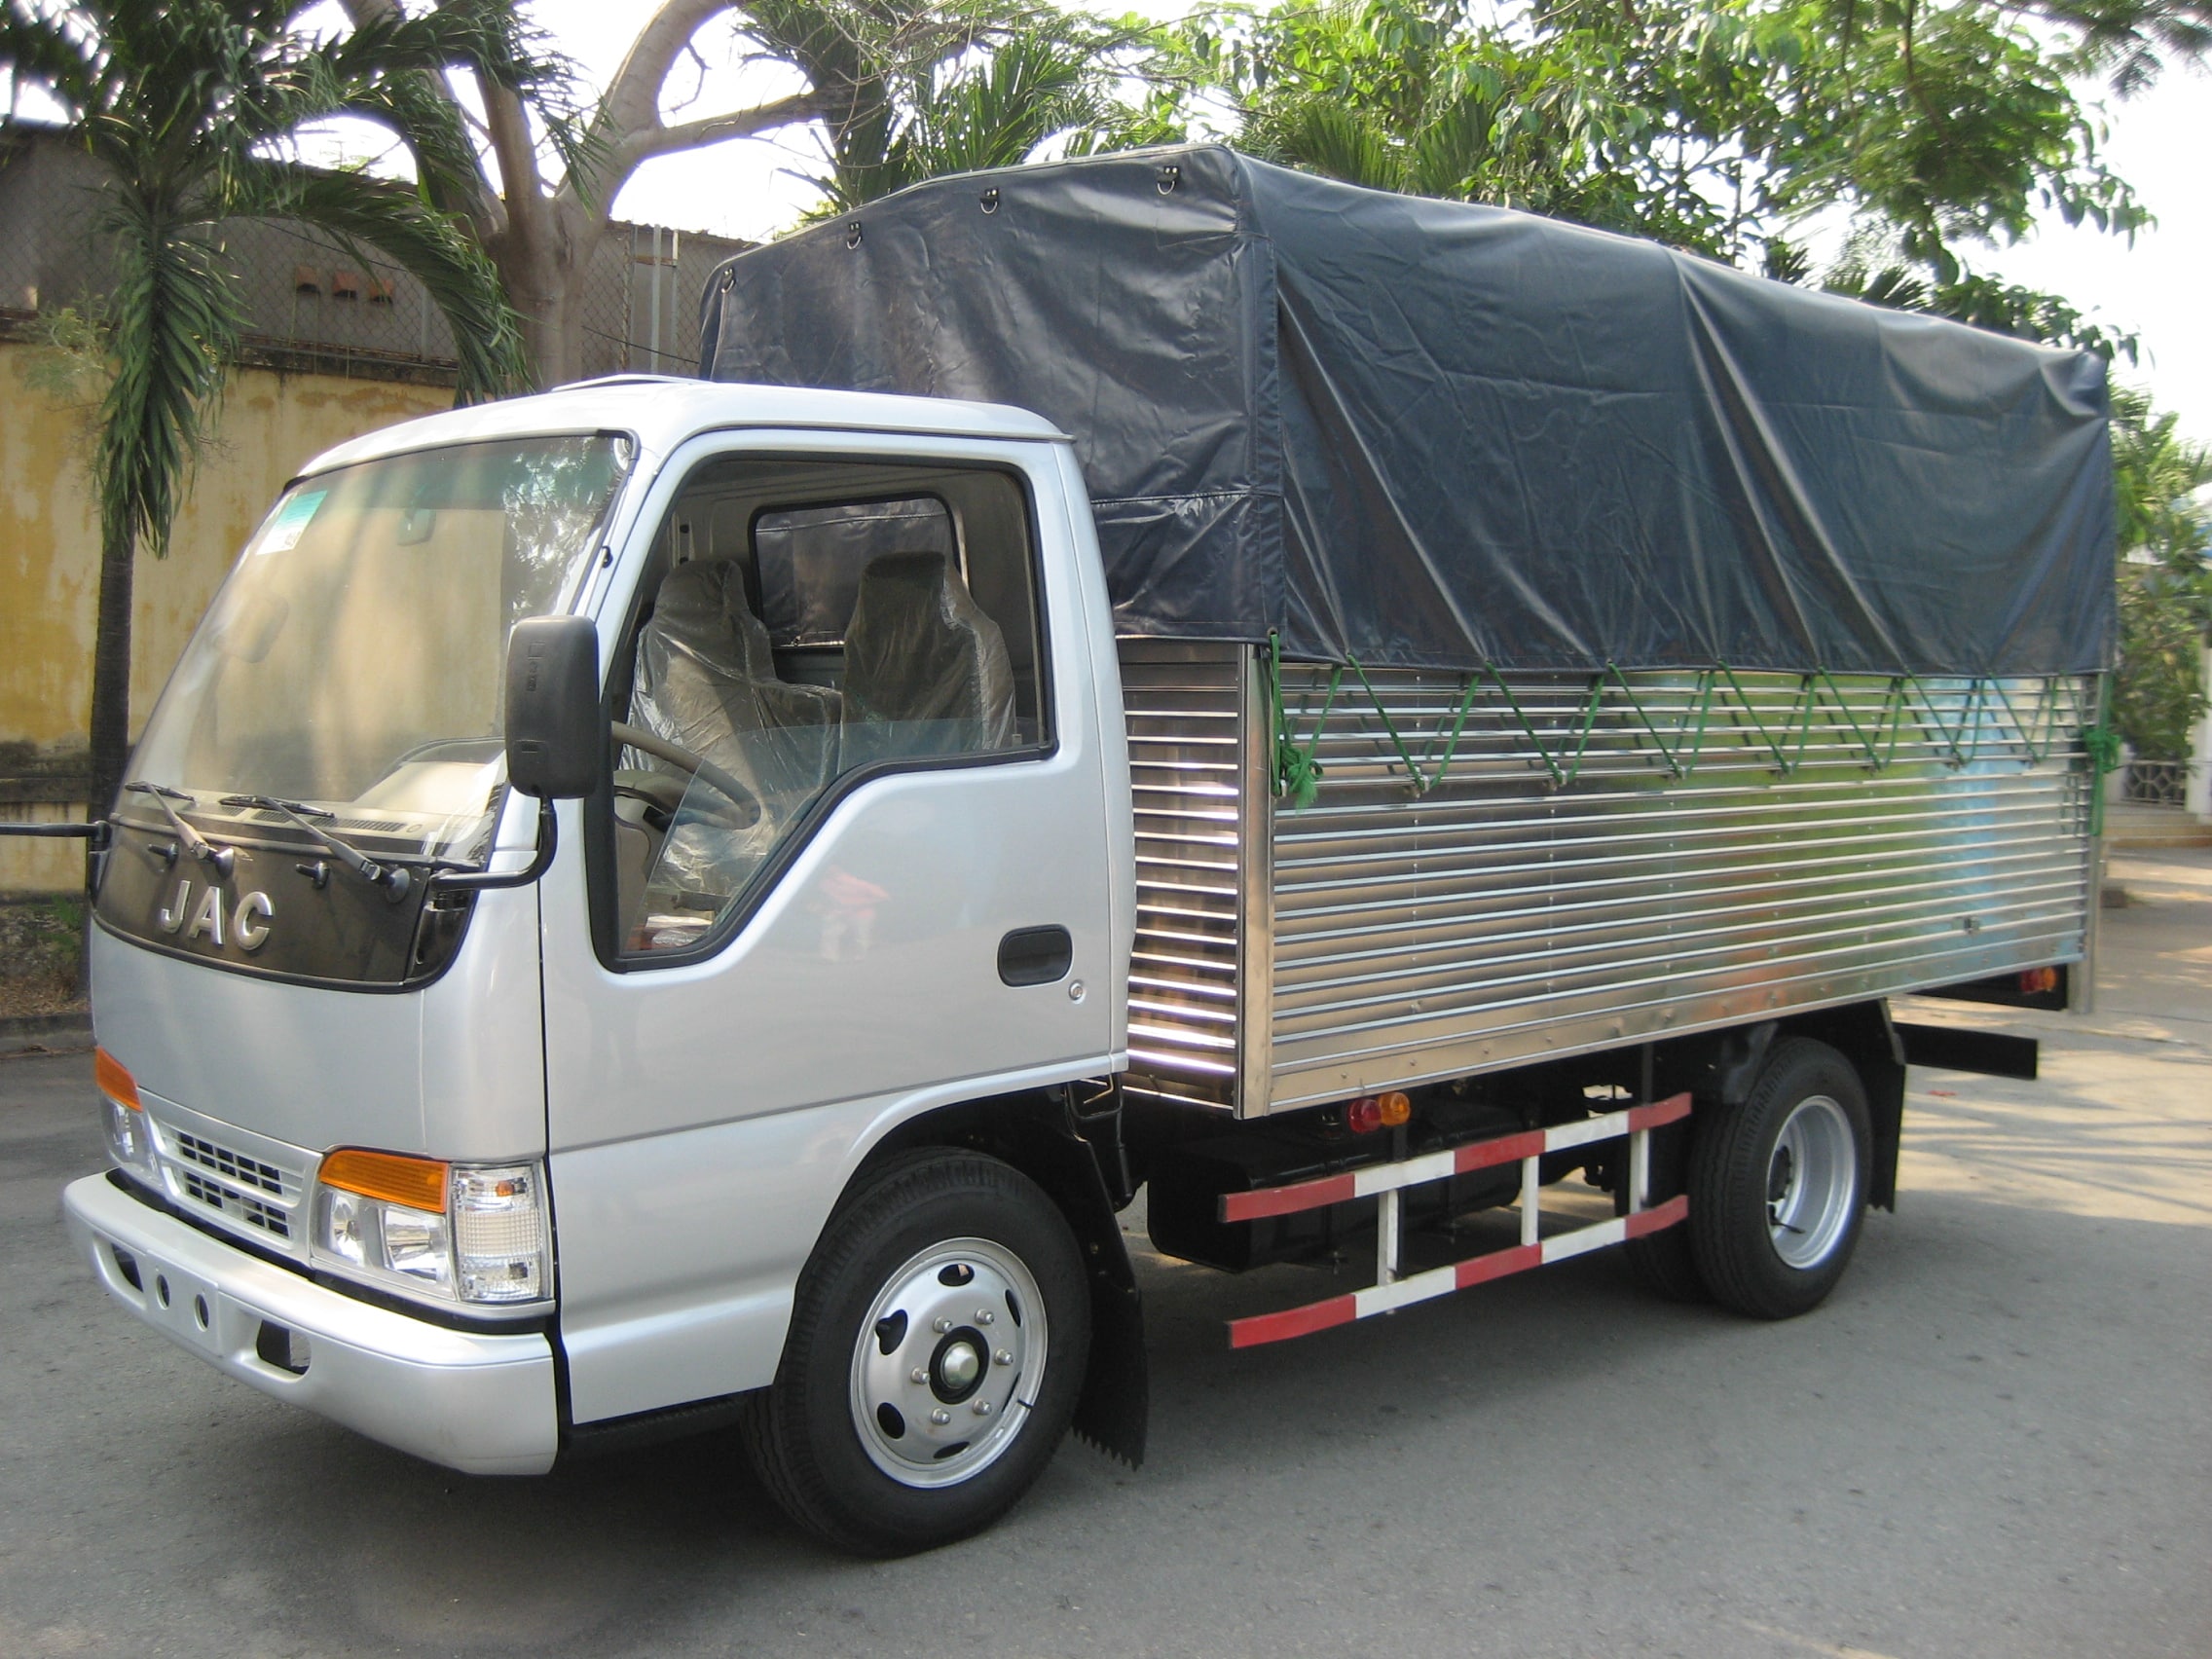 Dịch vụ cho thuê xe tải 1.25 tấn giá rẻ - Đường Việt Sài Gòn